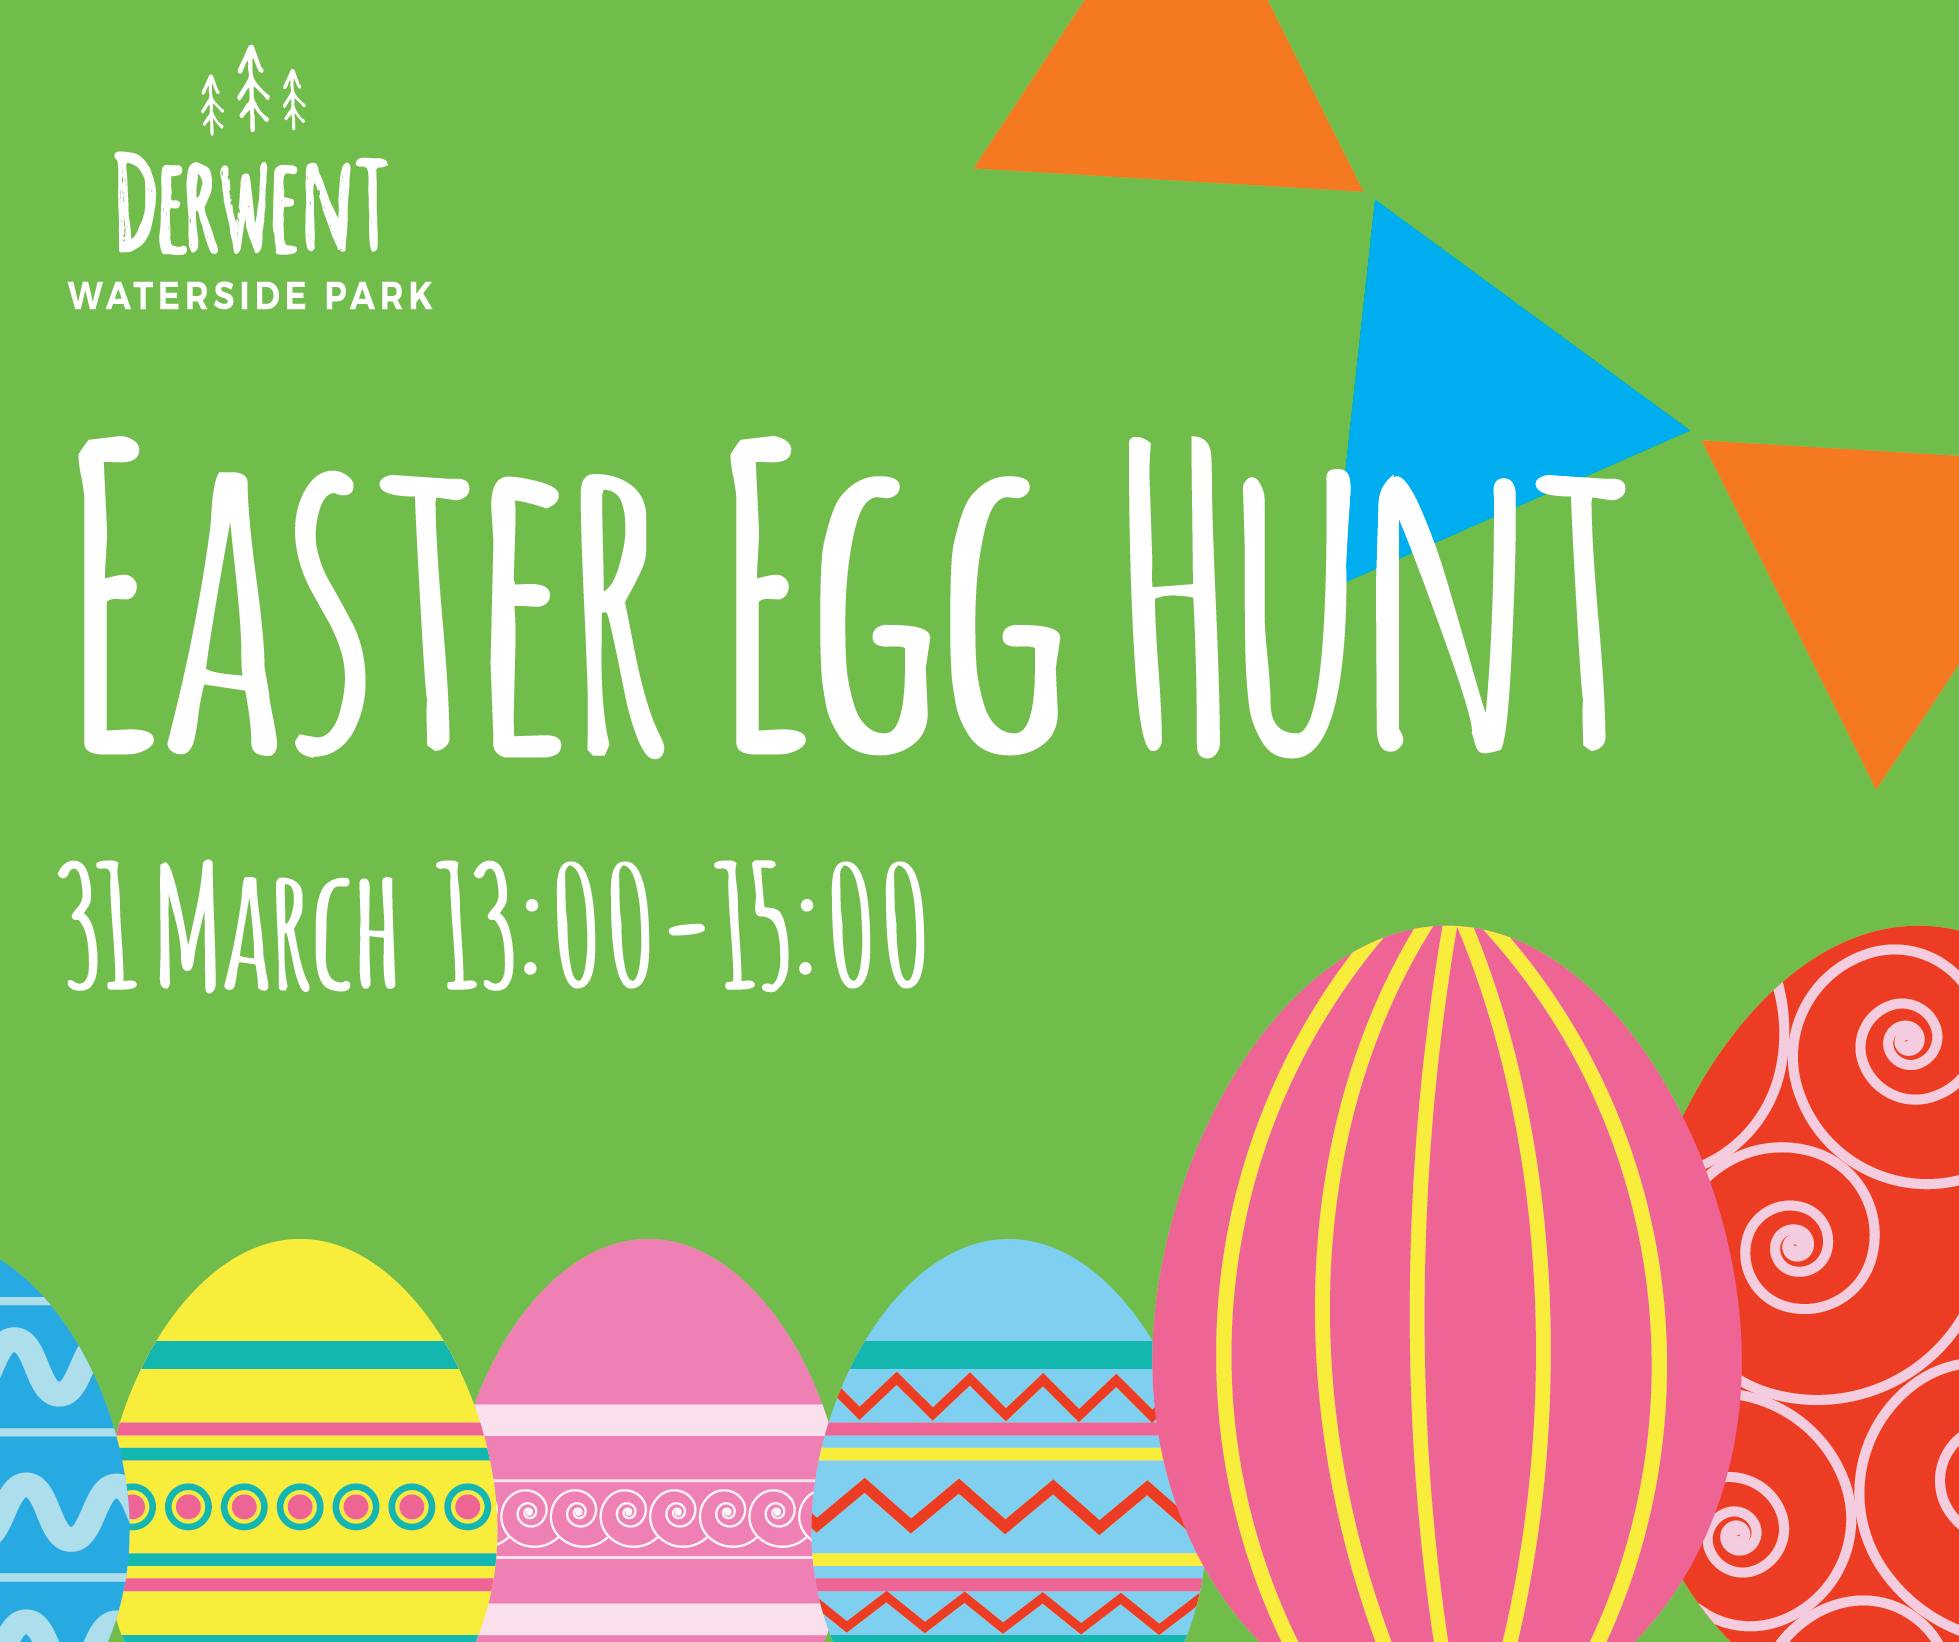 Derwent Waterside Park Easter Egg Hunt